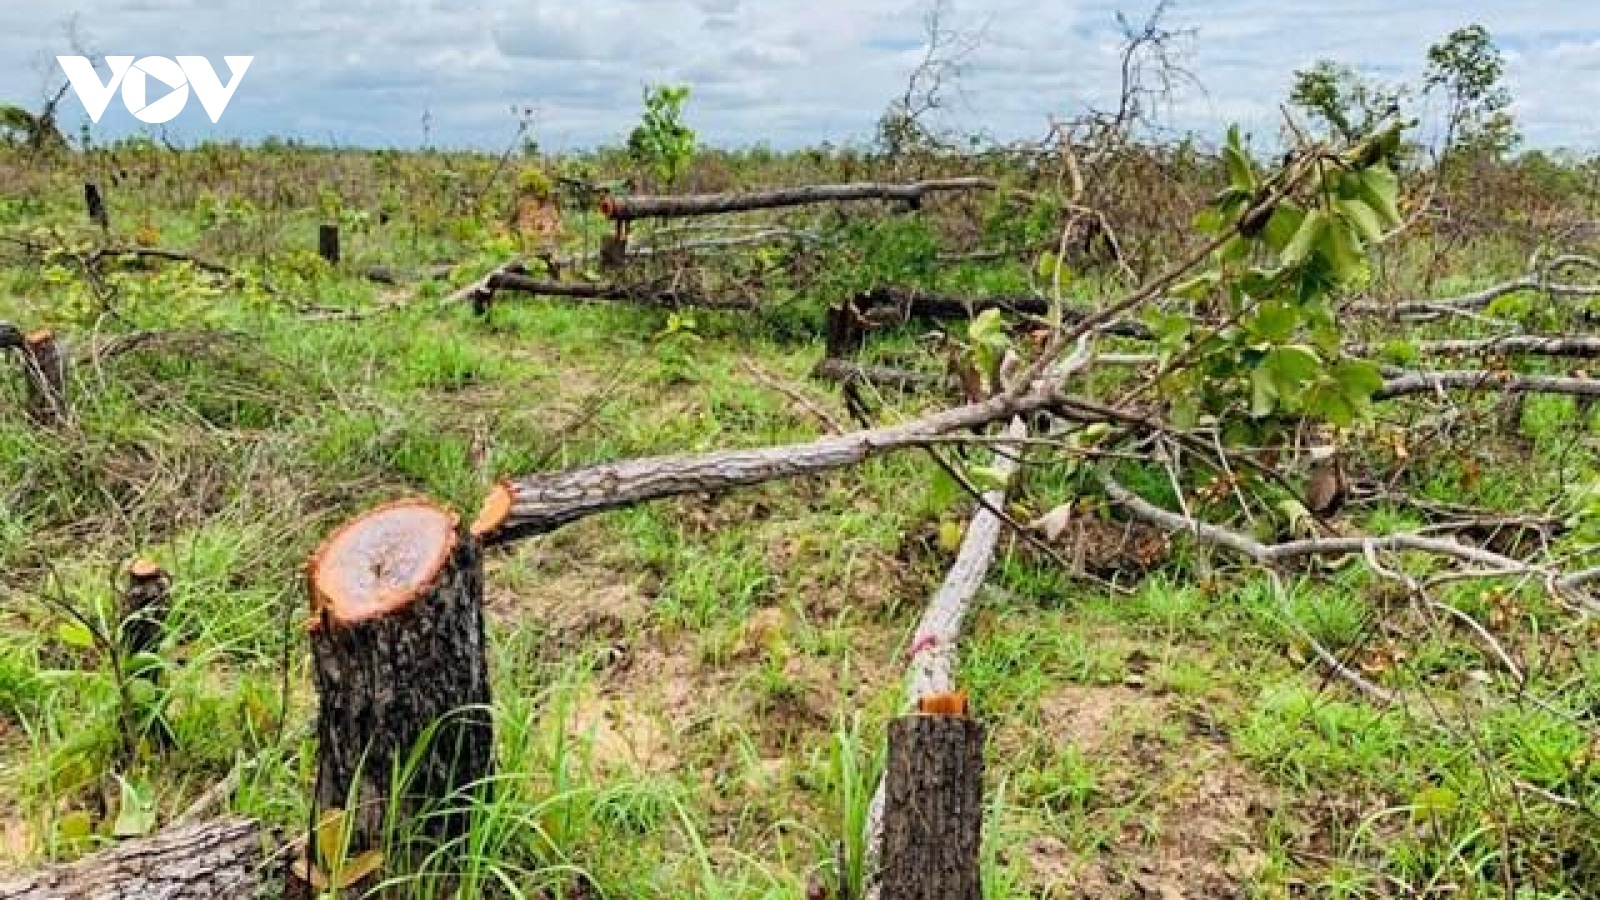 Để mất gần 400 ha rừng, chủ tịch xã ở Đắk Lắk tự nhận hình thức kỷ luật cách chức